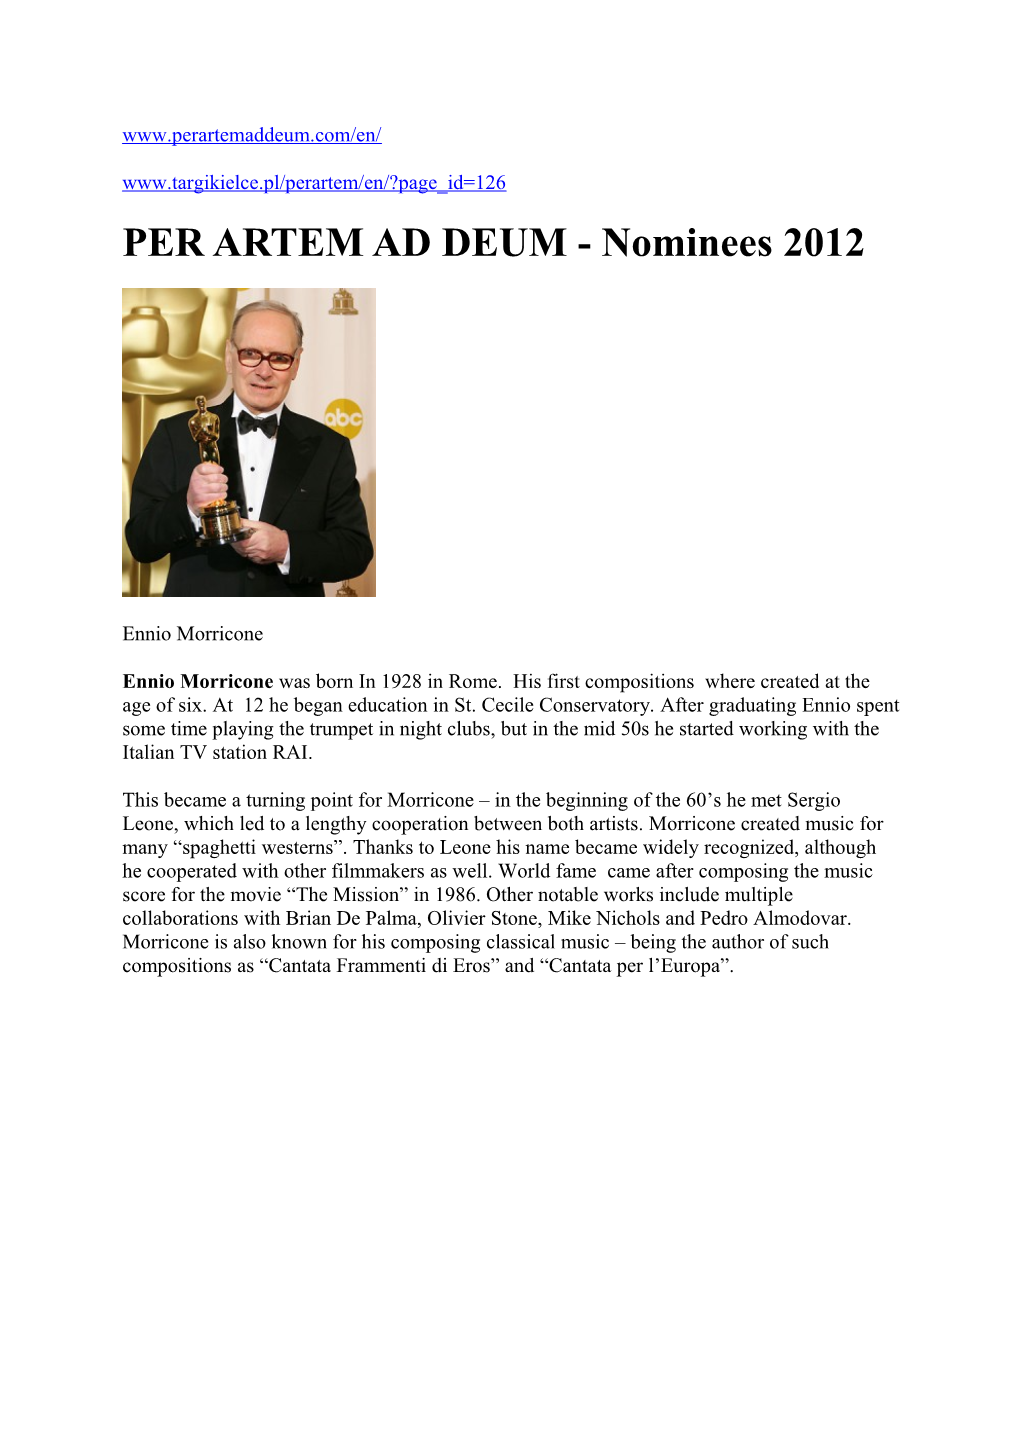 PER ARTEM AD DEUM - Nominees 2012